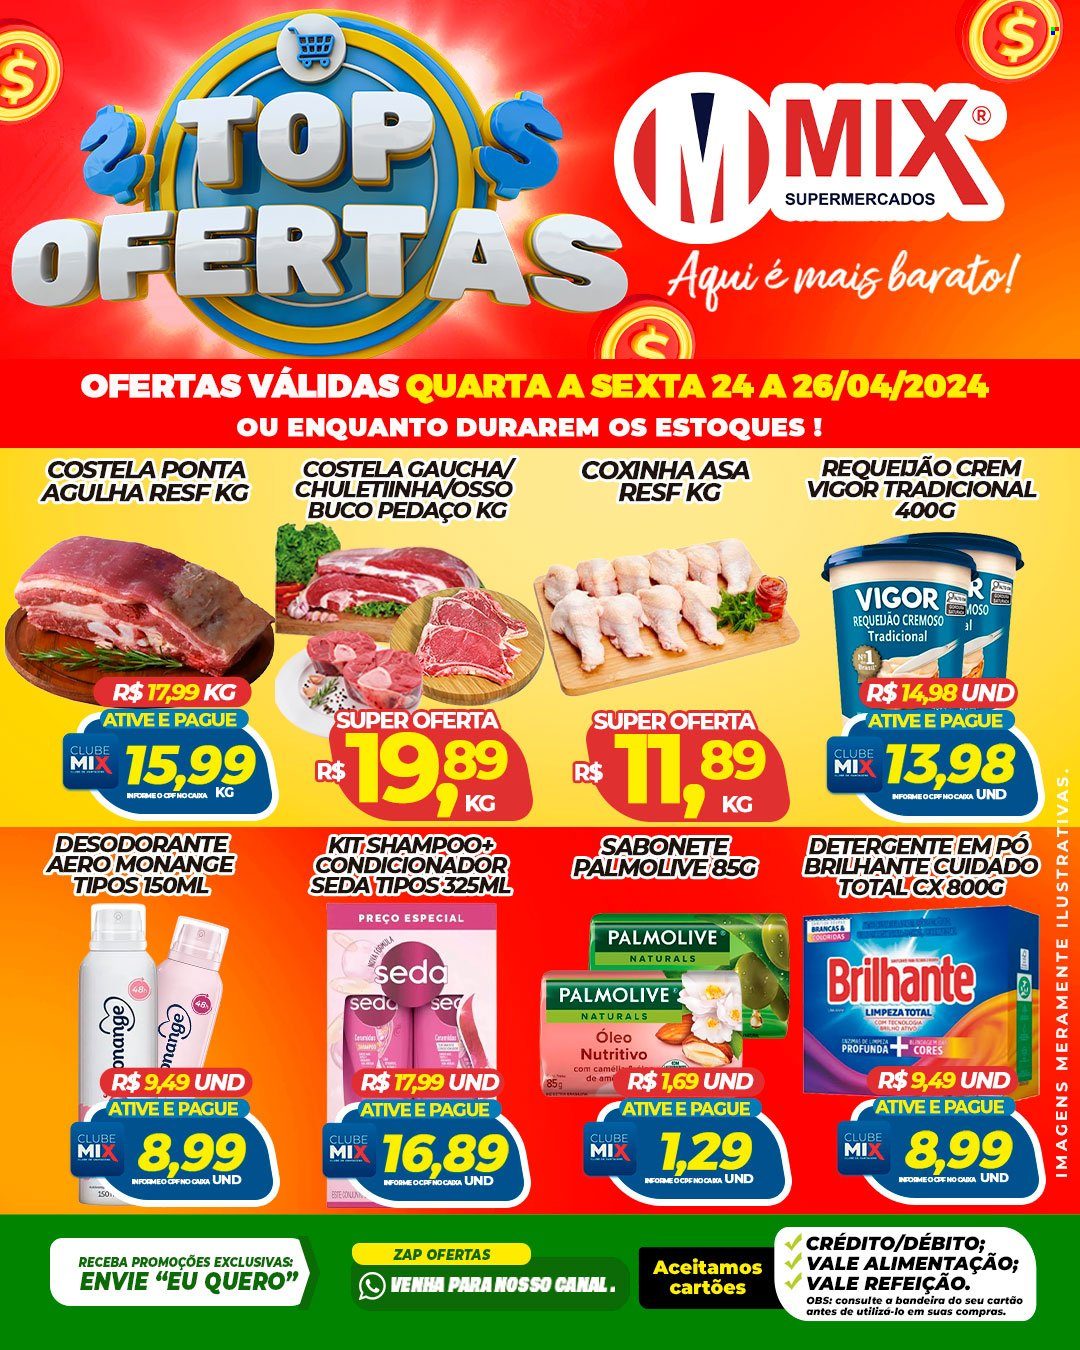 Encarte Mix Supermercados  - 24.04.2024 - 26.04.2024.